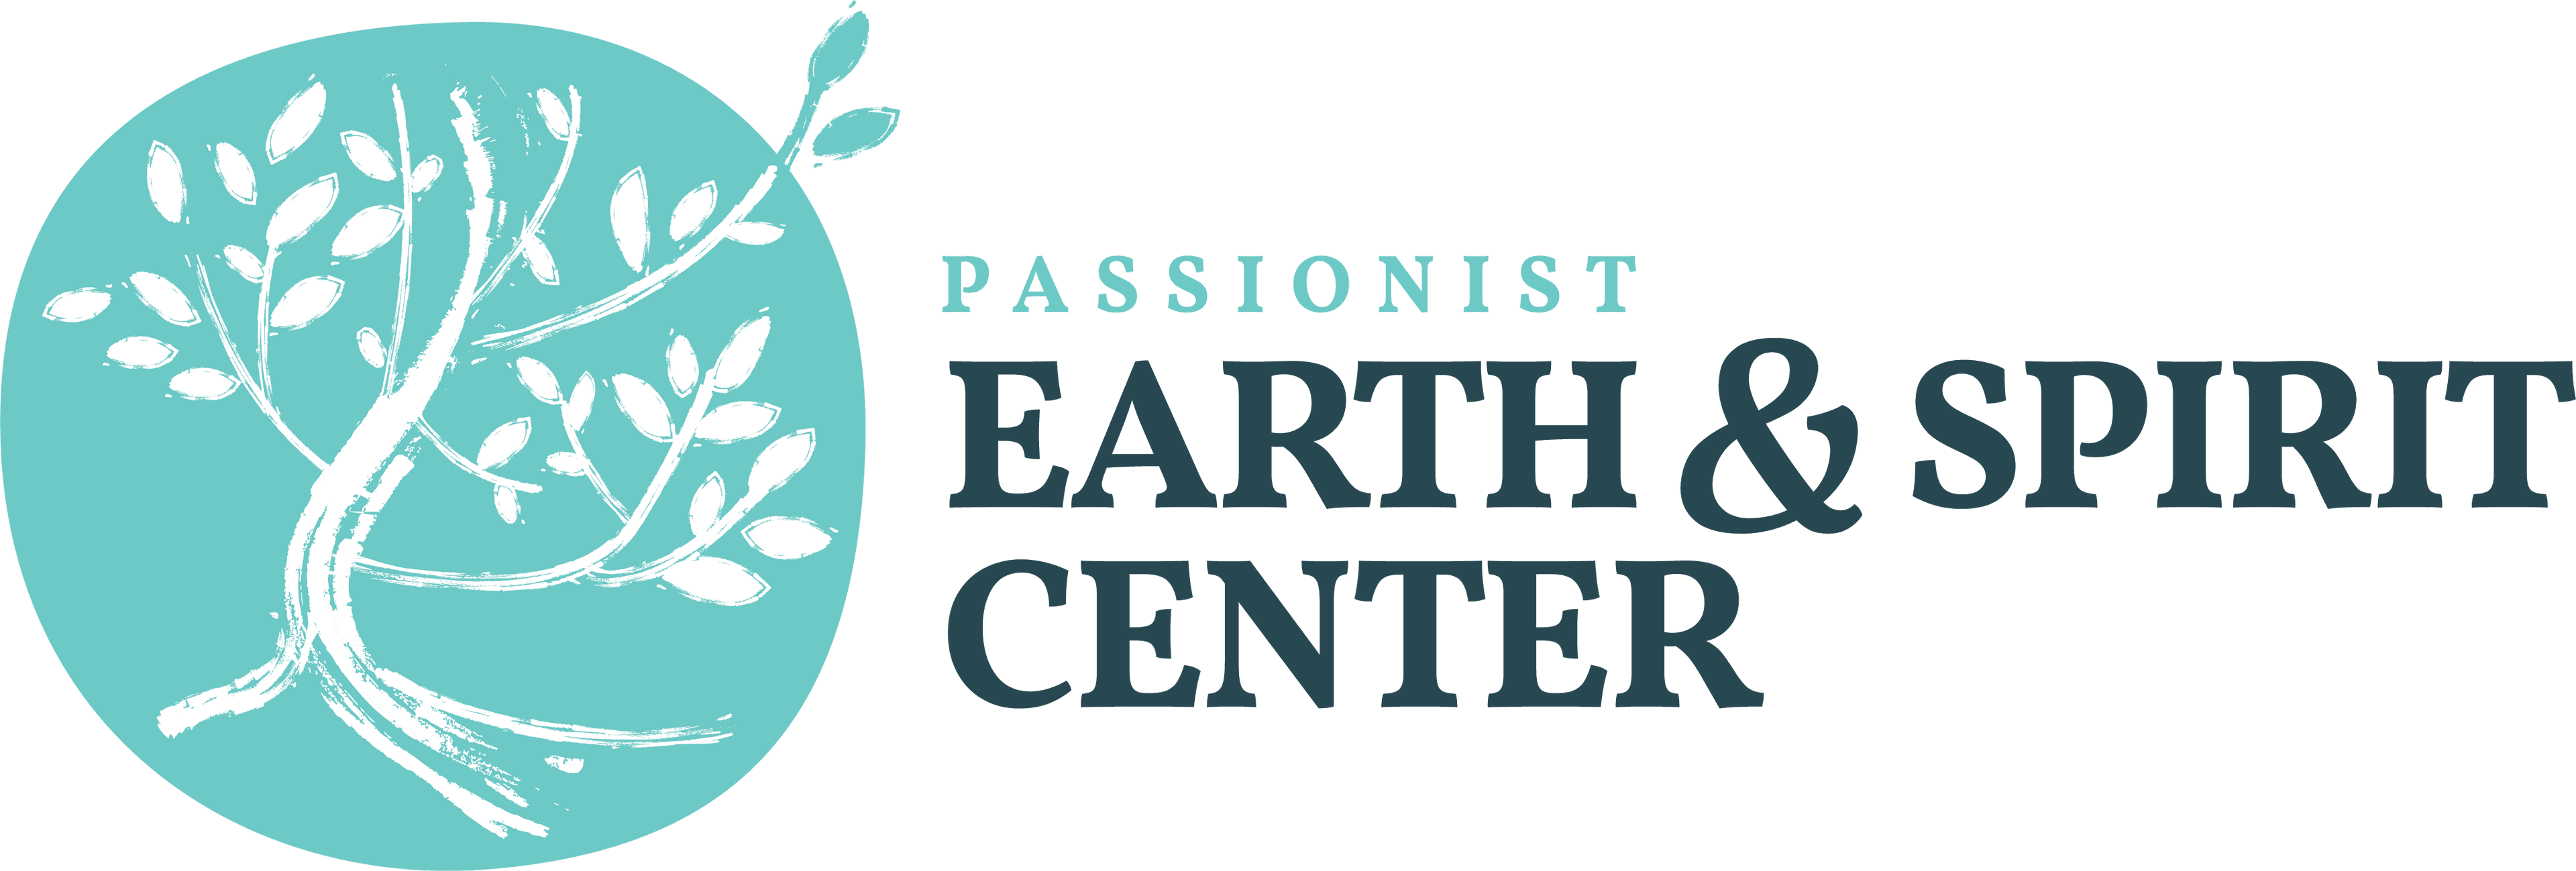 Earth & Spirit Center Logo